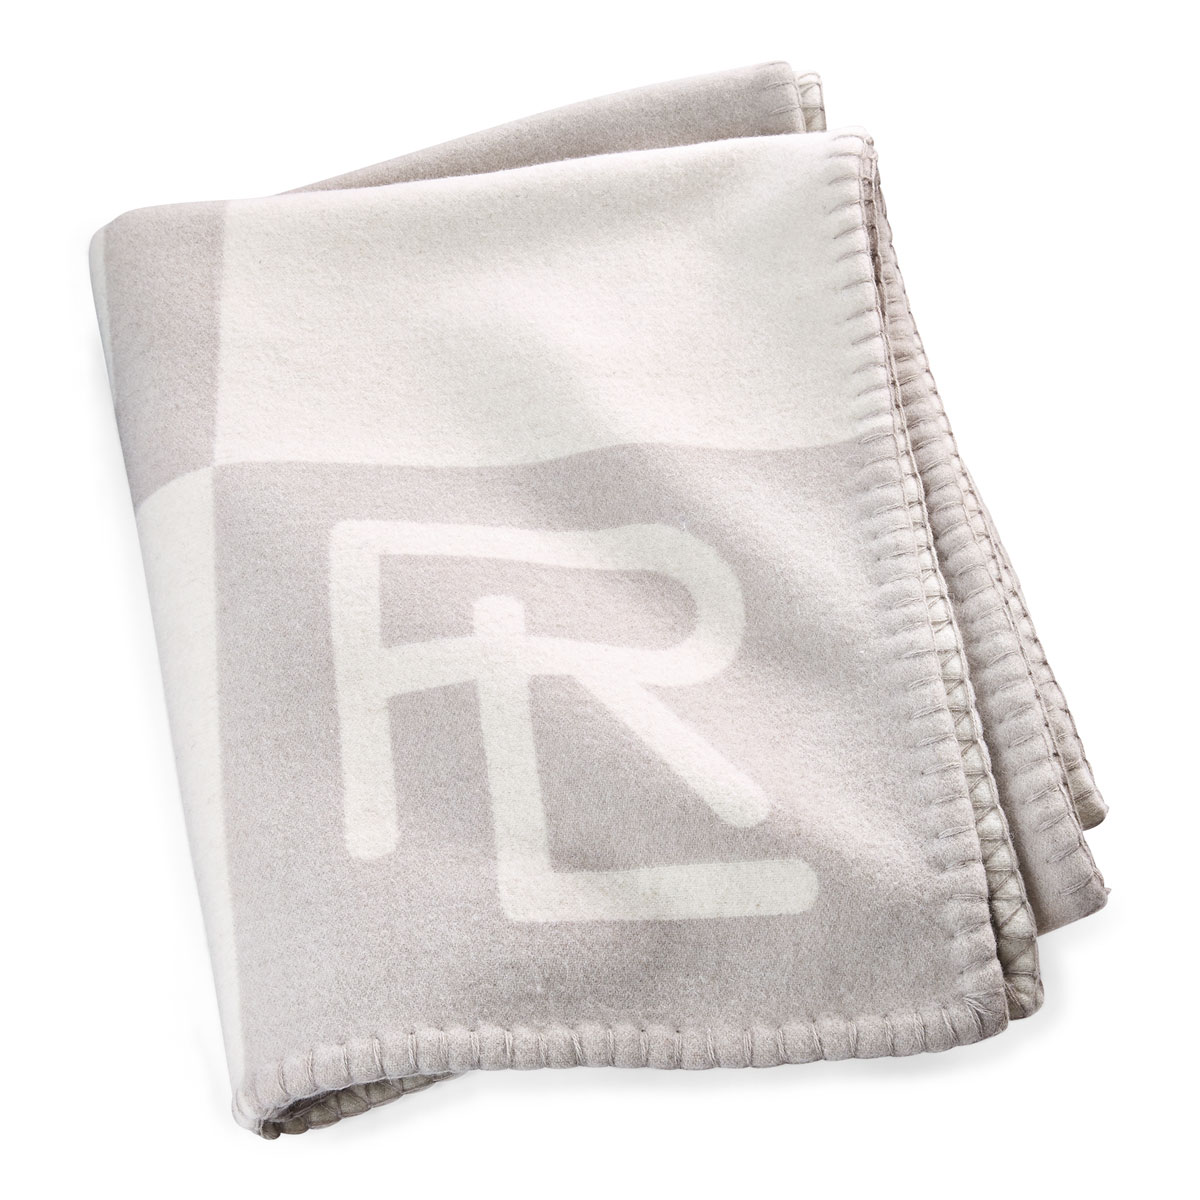 Ralph Lauren Throw Blanket Norhtam RL 54"x72" Cream, Gray